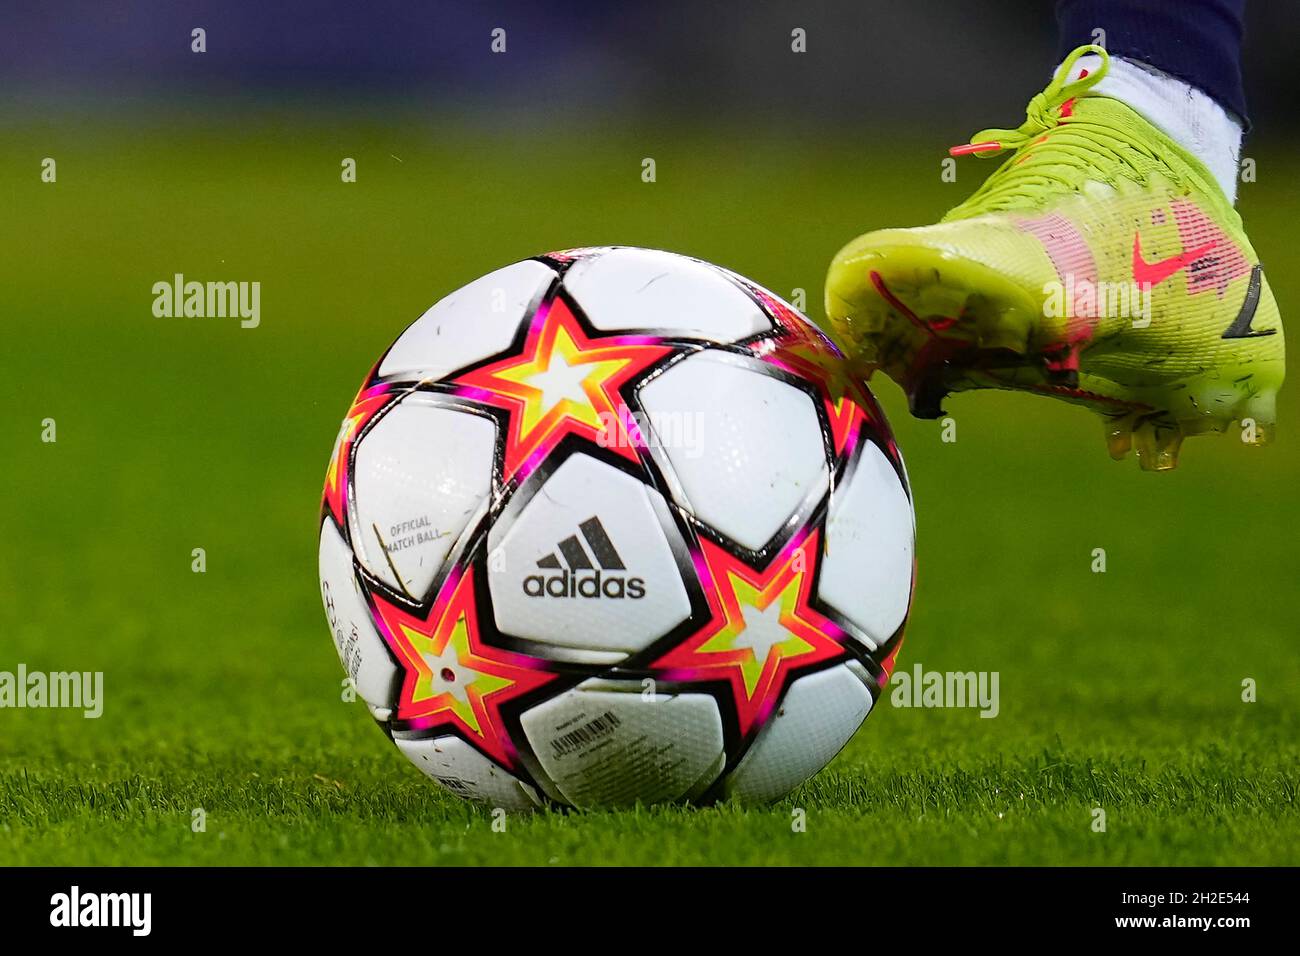 Las botas Nike de Ansu Fati y el balón oficial de la UEFA Champions League  Adidas durante el partido de la UEFA Champions League entre el FC Barcelona  y el FC Dynamo